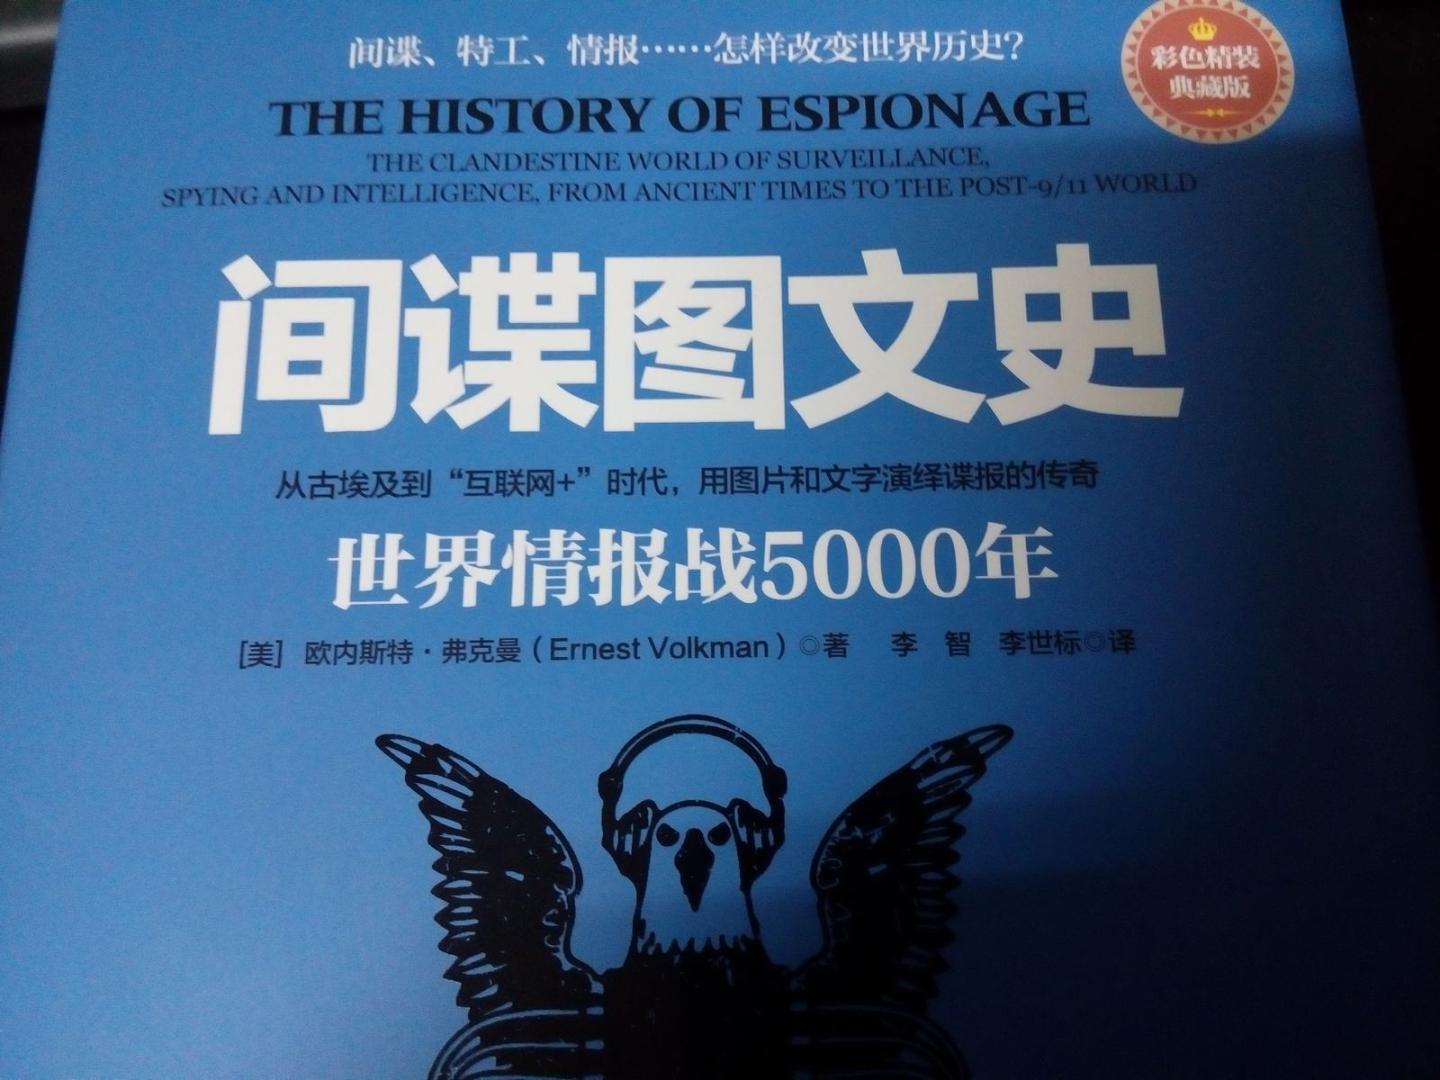 该书用比较精练的语言讲述了间谍作为一门职业的发展历史.